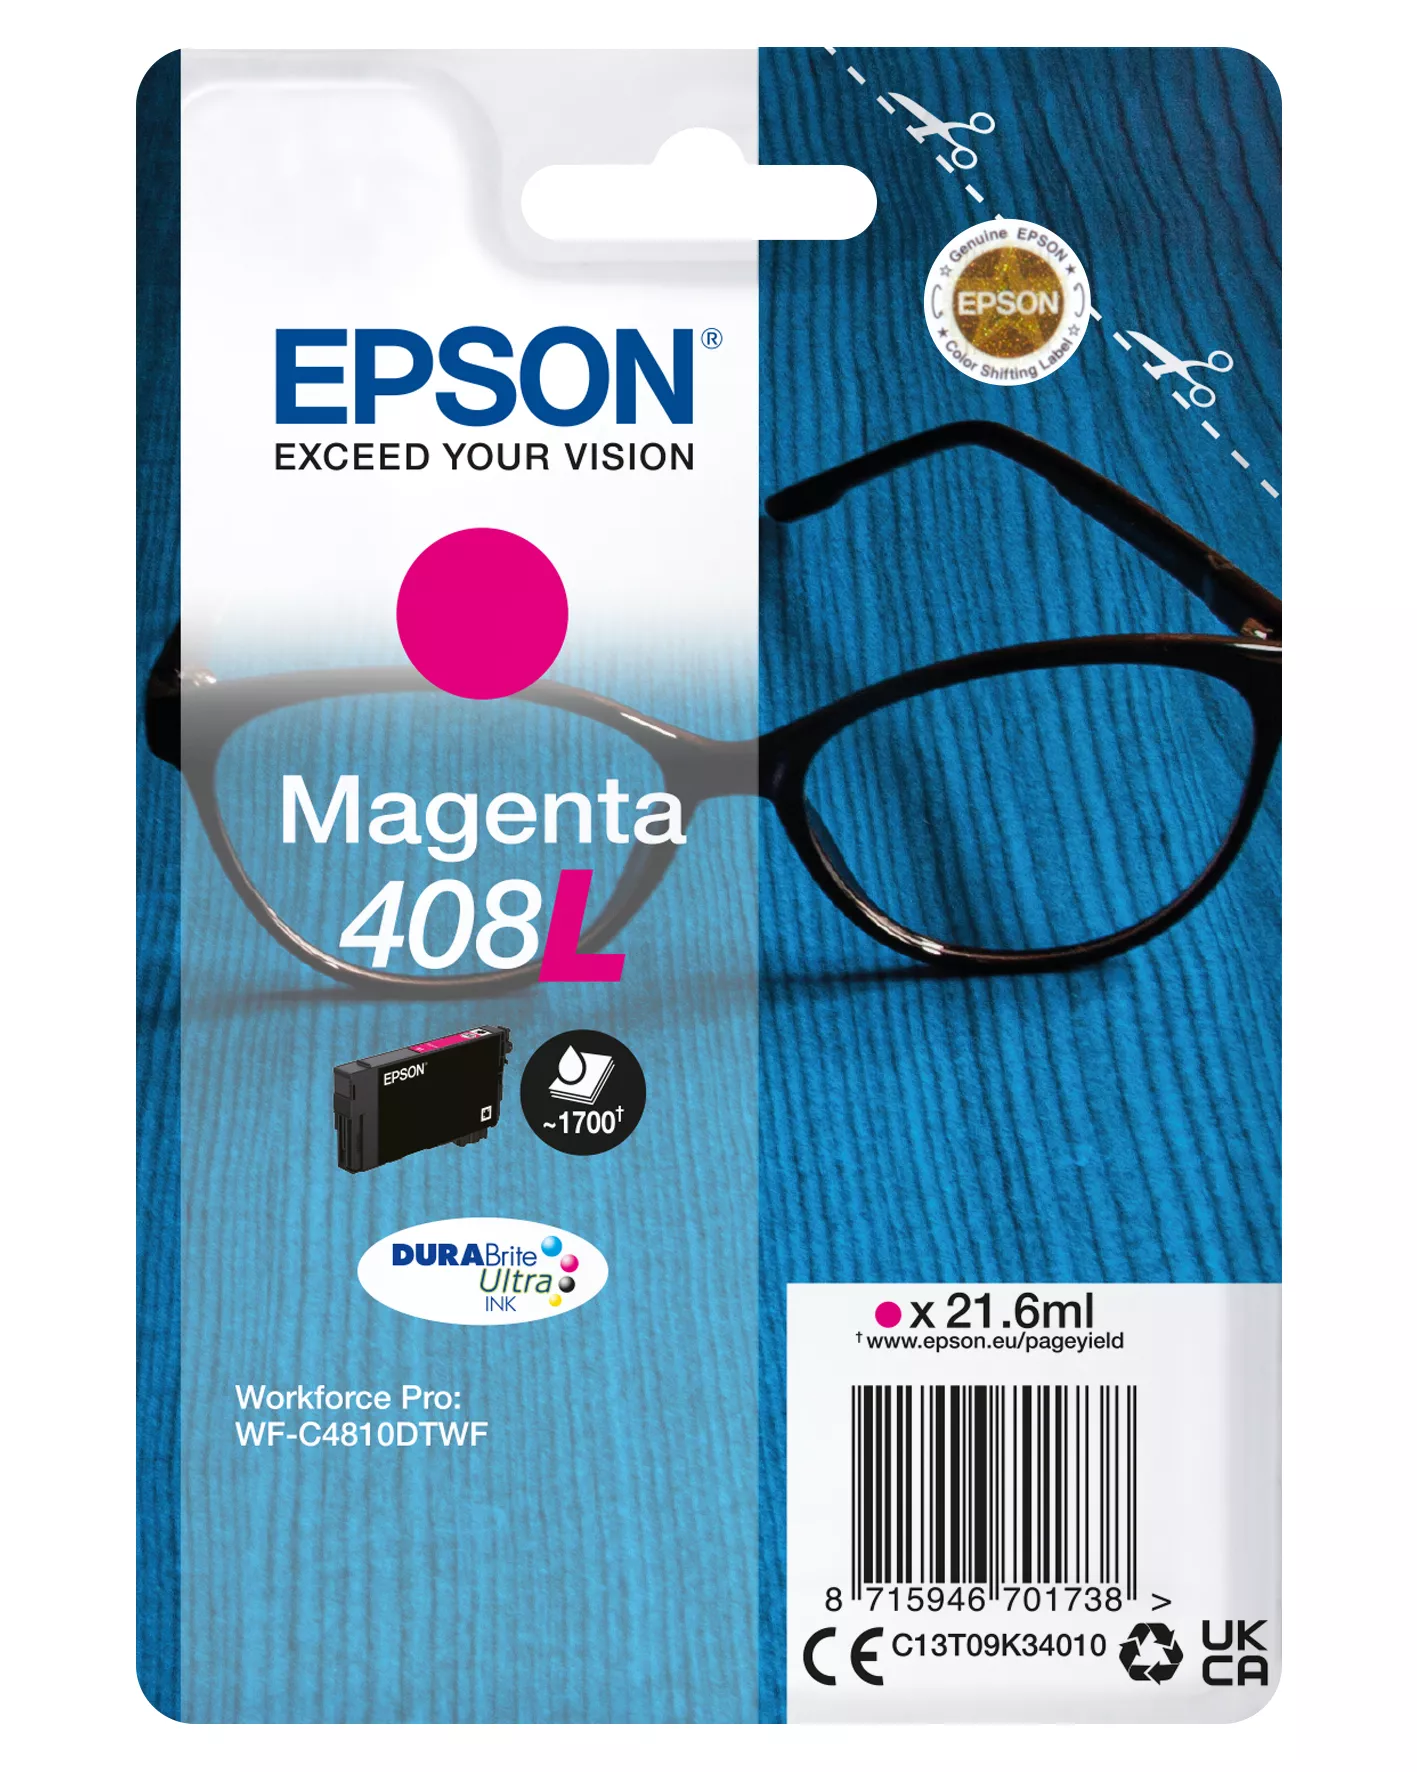 Achat EPSON Singlepack Magenta 408L DURABrite Ultra Ink sur hello RSE